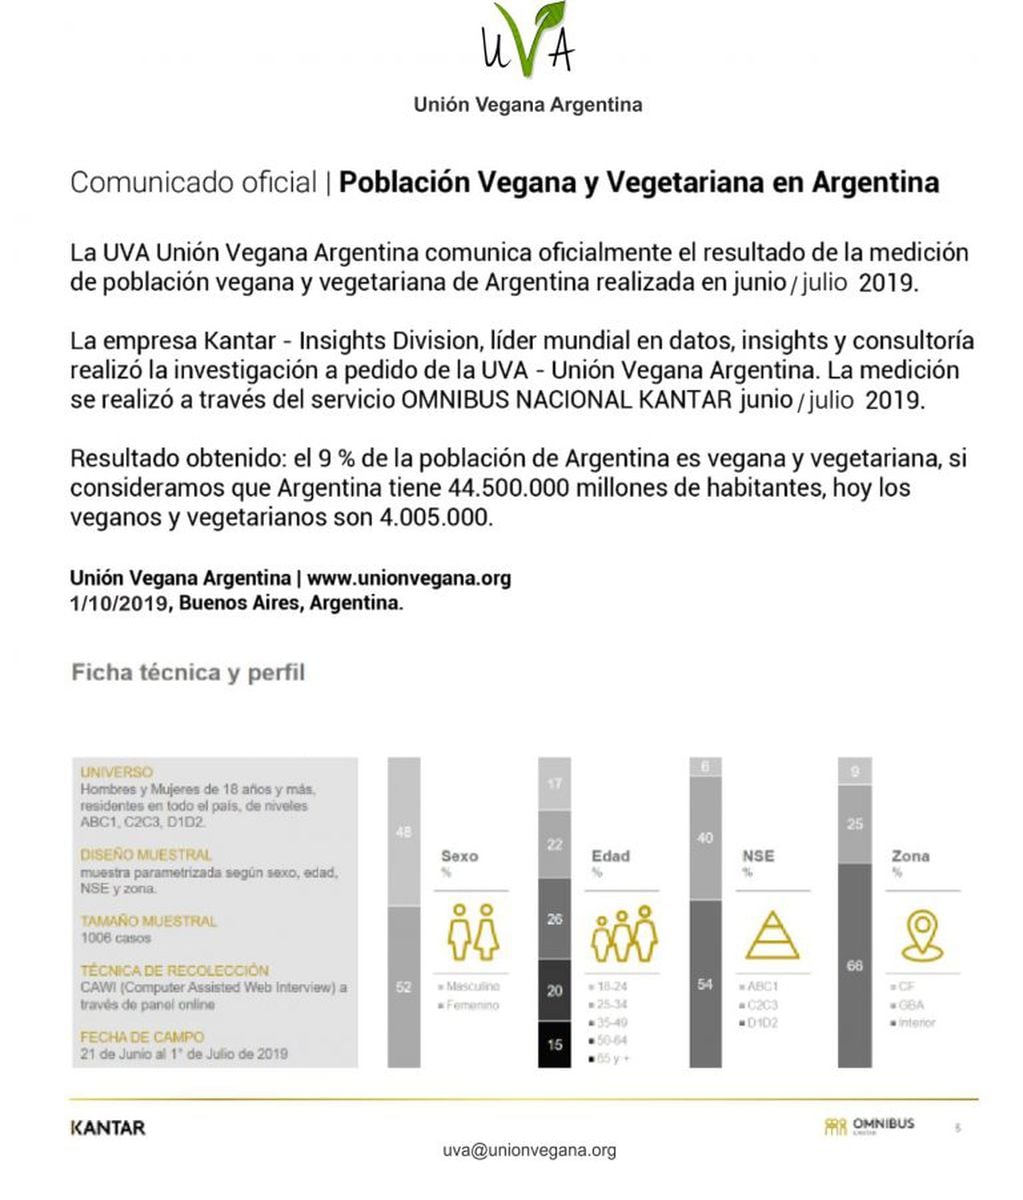 El 9% de la población de Argentina es vegana y vegetariana según un estudio.